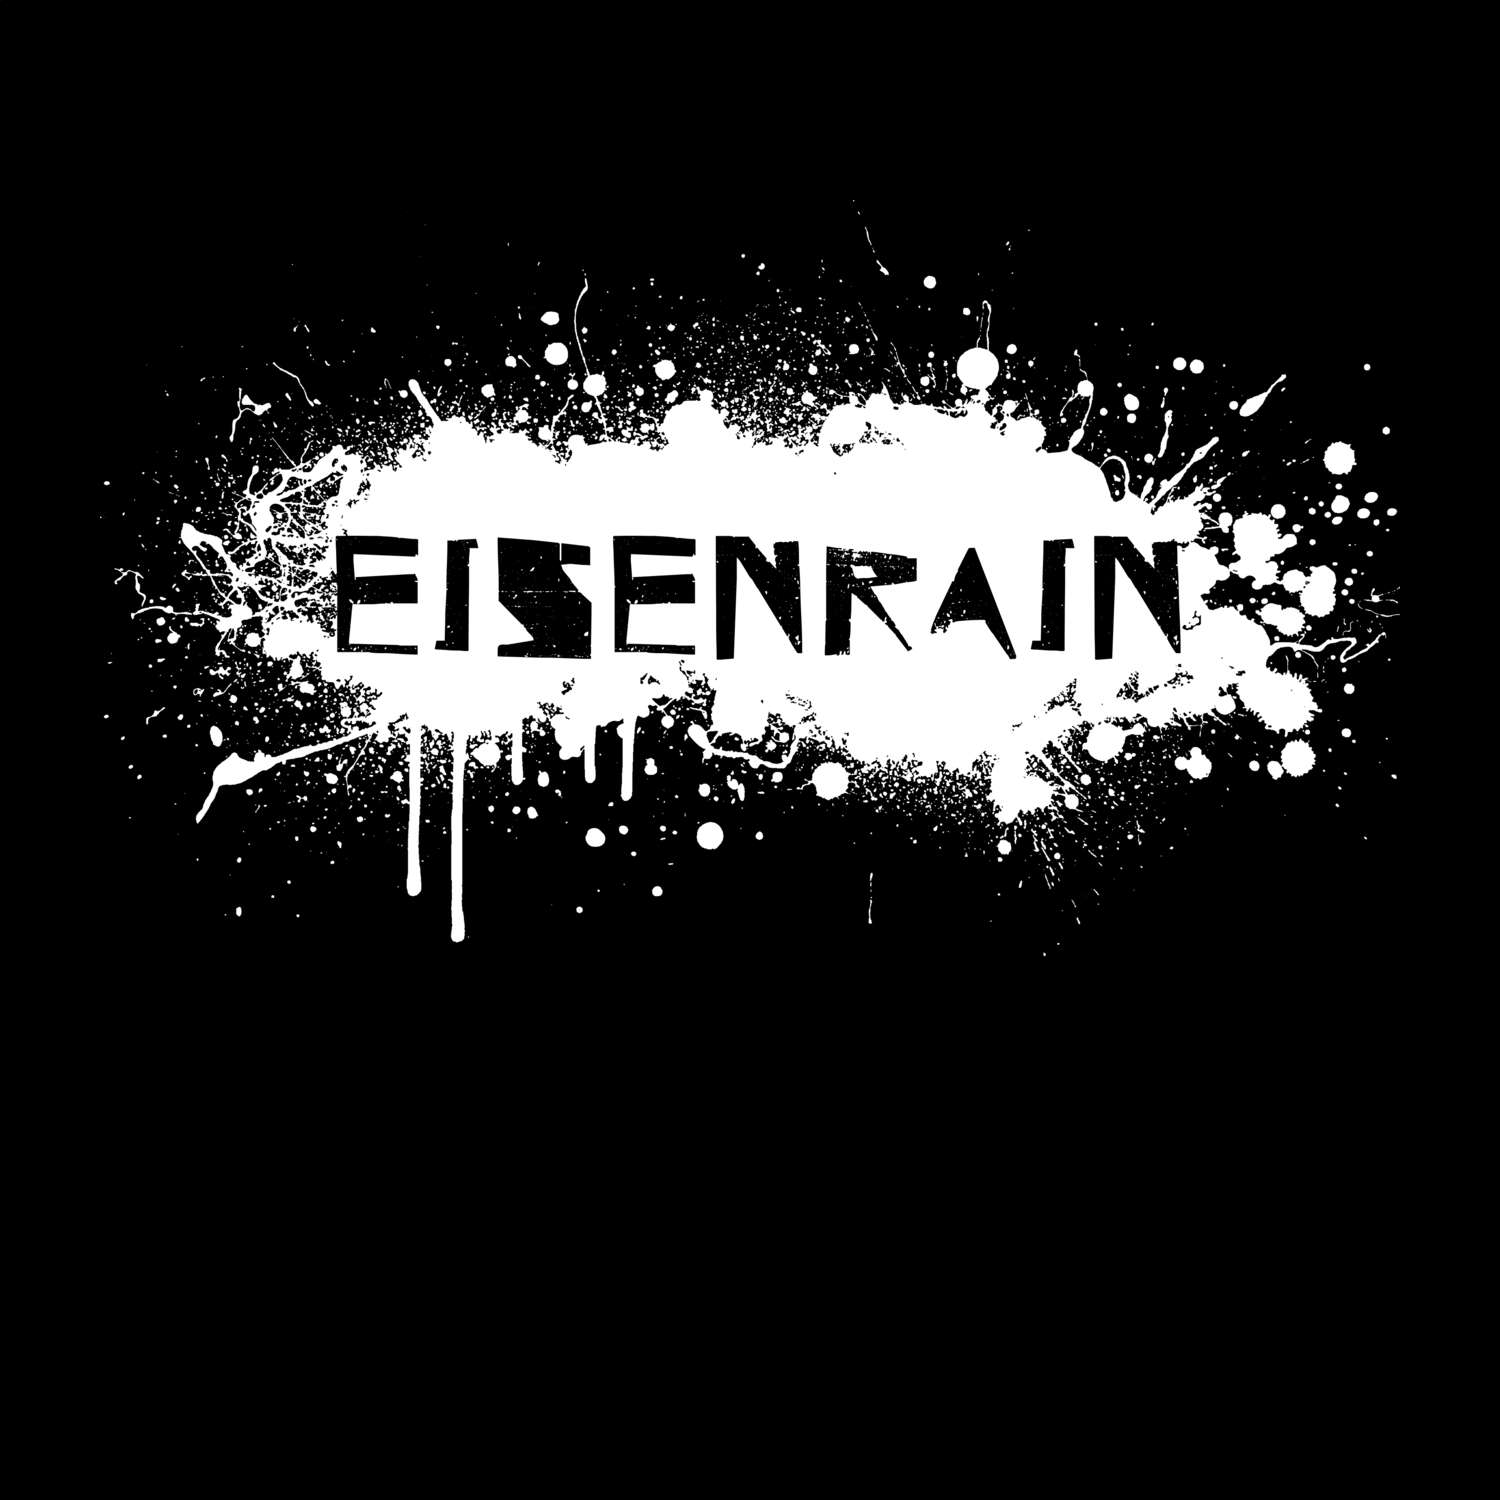 Eisenrain T-Shirt »Paint Splash Punk«